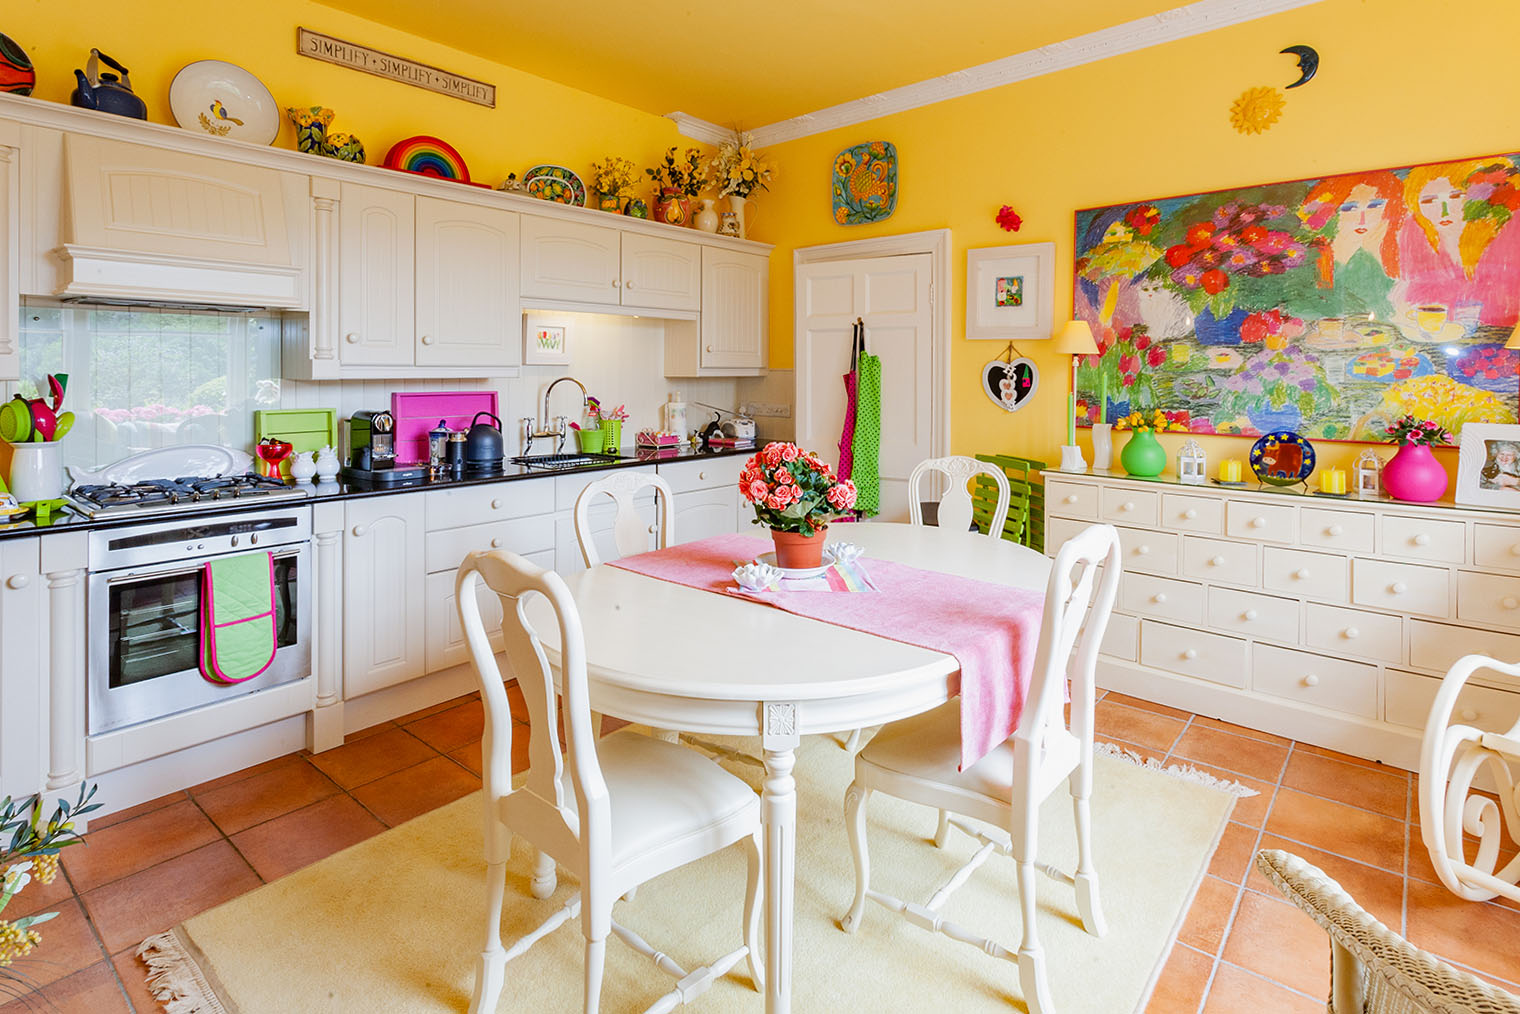 Множество ярких элементов утомляет: желтые стены, цветы, салатовые и розовые аксессуары у зеркала, на столешнице и дорожка на столе. Это рассеивает внимание. Фотография: Ian Luck / Shutterstock / FOTODOM